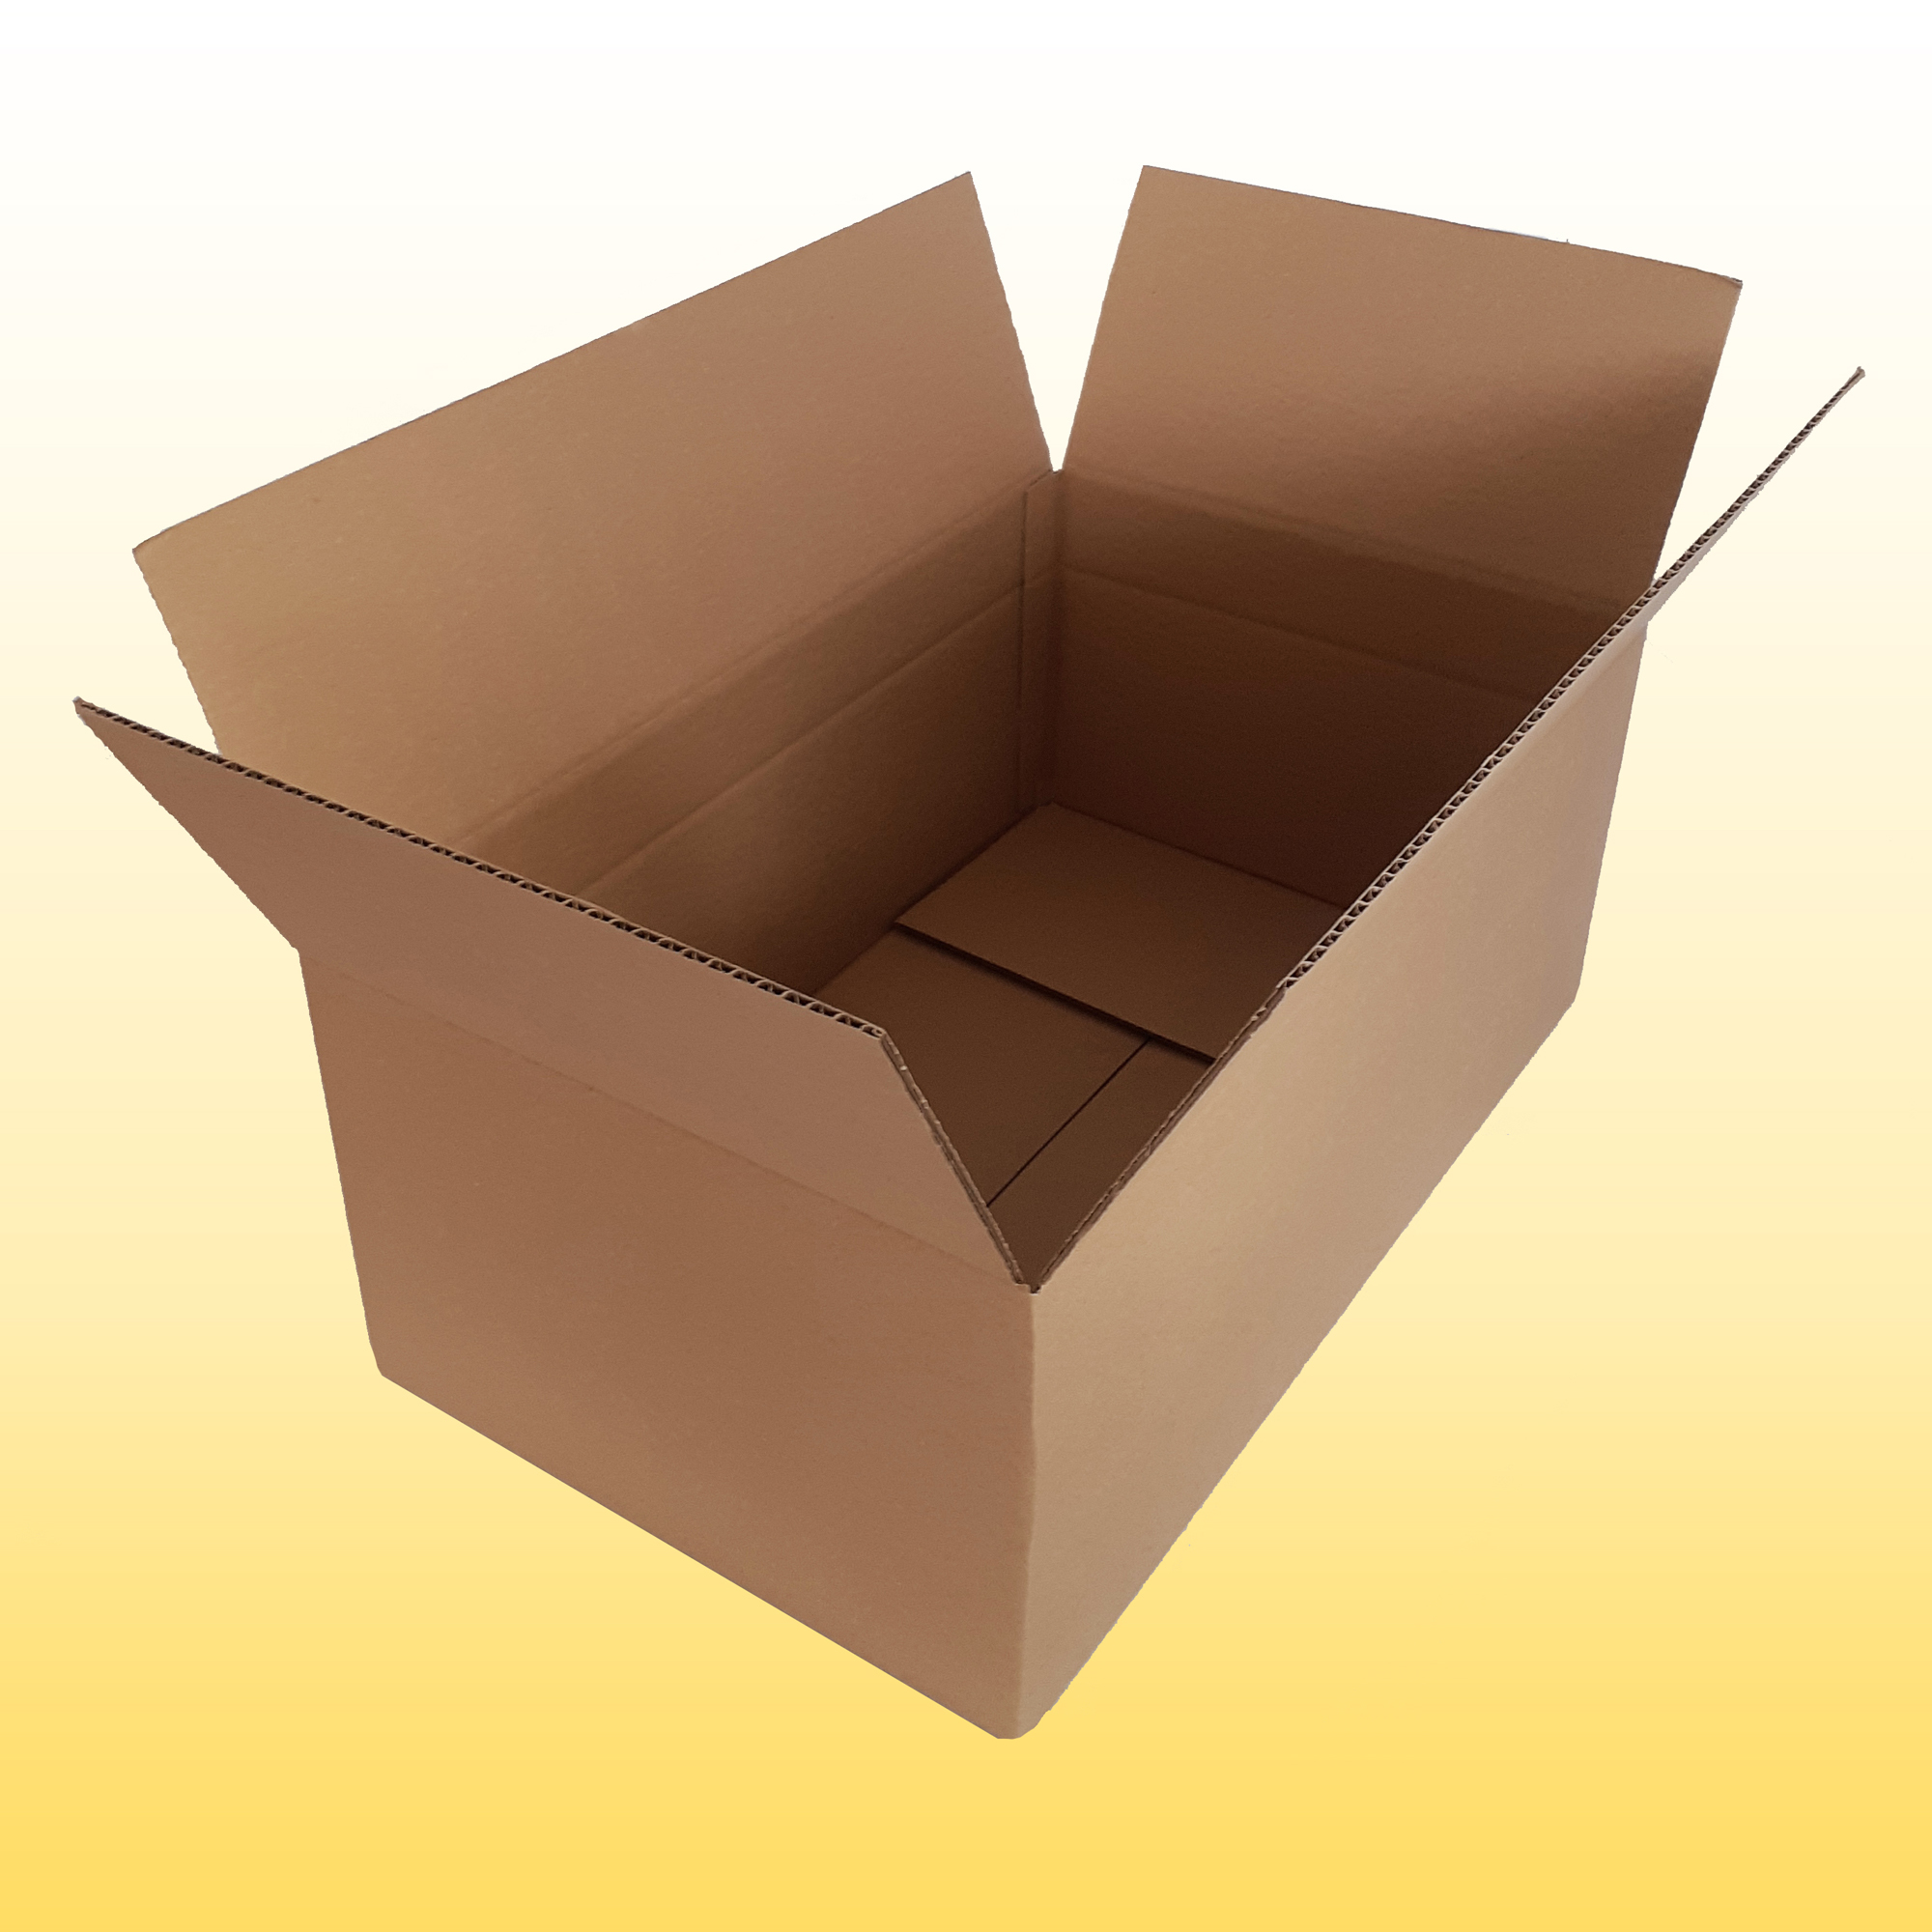 ratioform Lot de 10 boîtes en carton 50 x 30 x 30 cm Boîte pour déménagement et emballage à onde unique